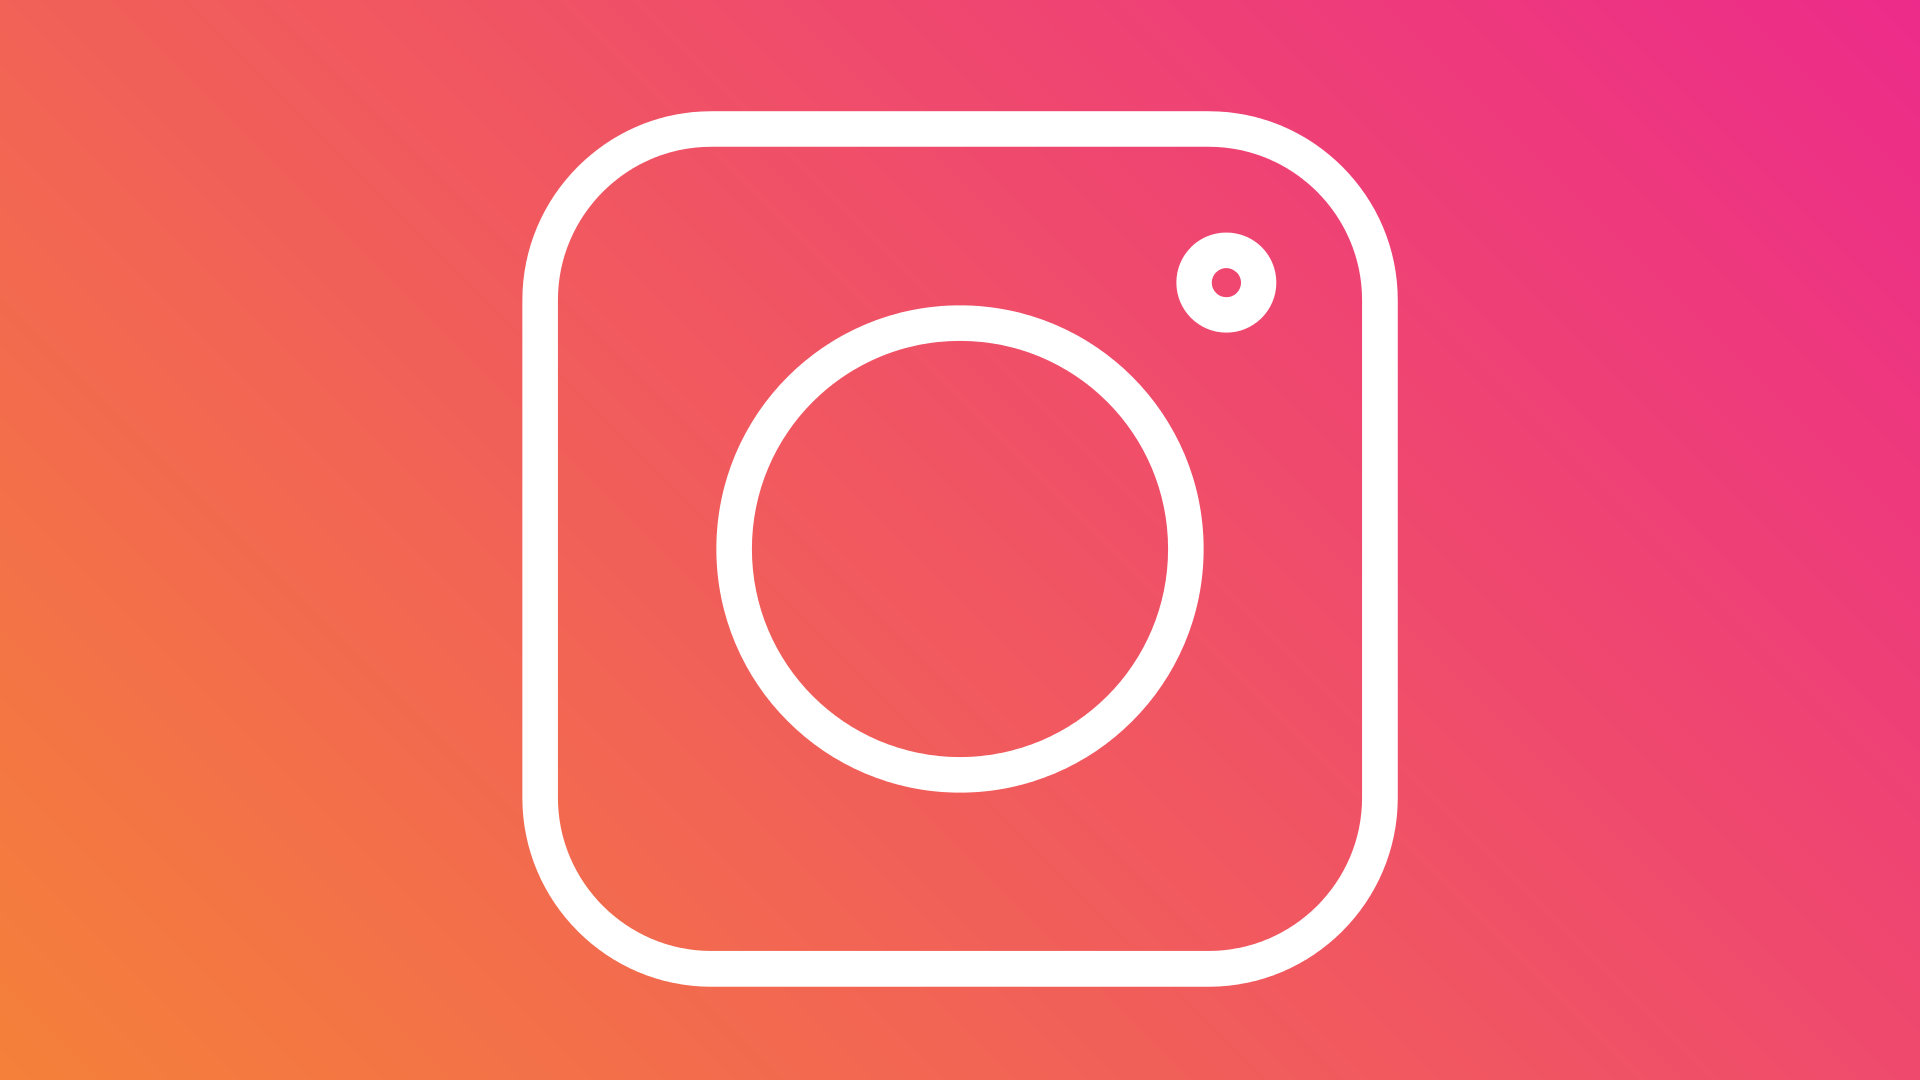 Meu melhores amigos  Instagram, Instagram photo, Photo and video